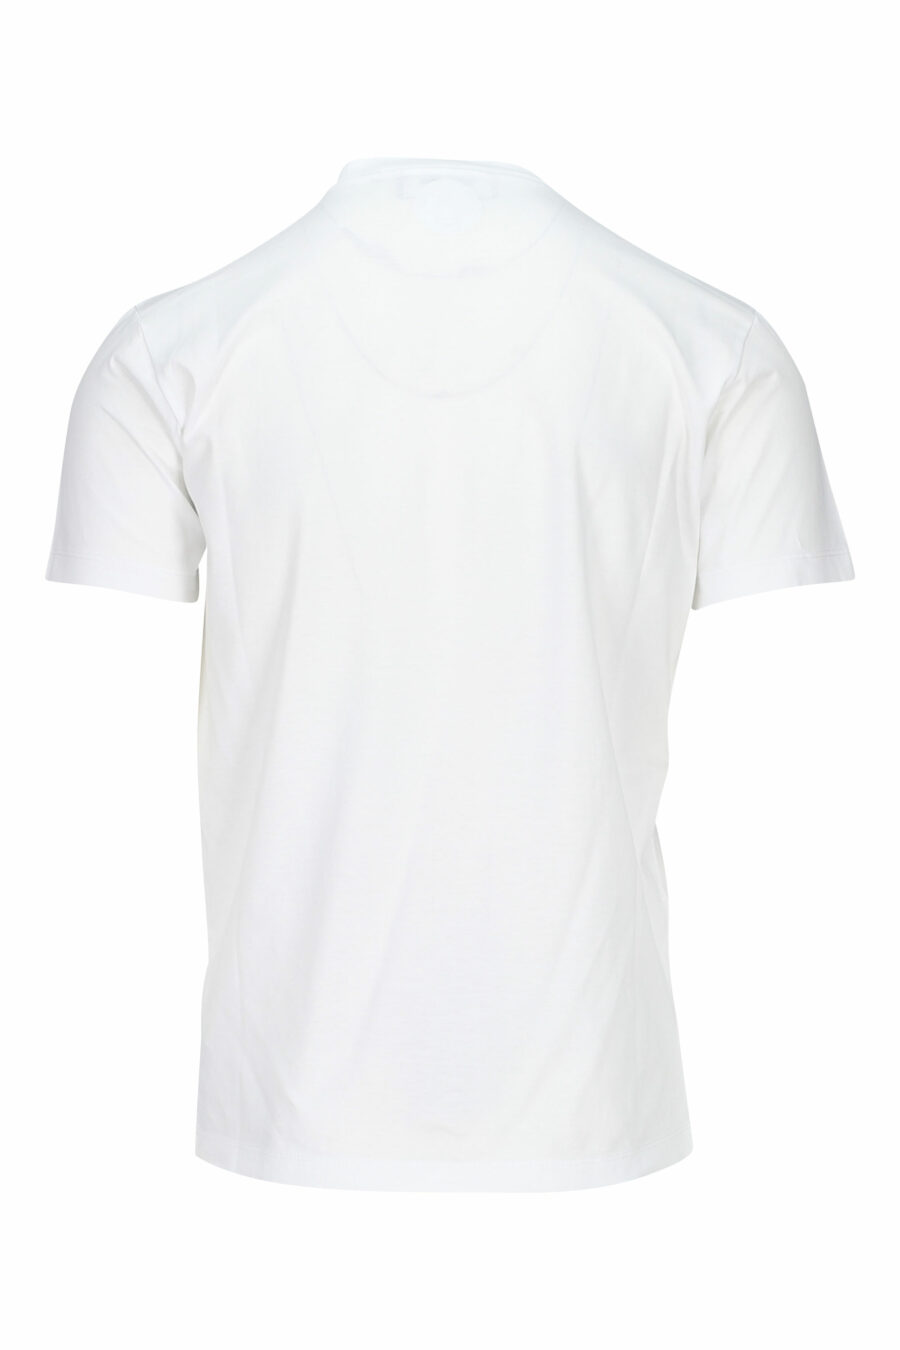 White T-shirt with rgb maxilogo - 8052134941089 1